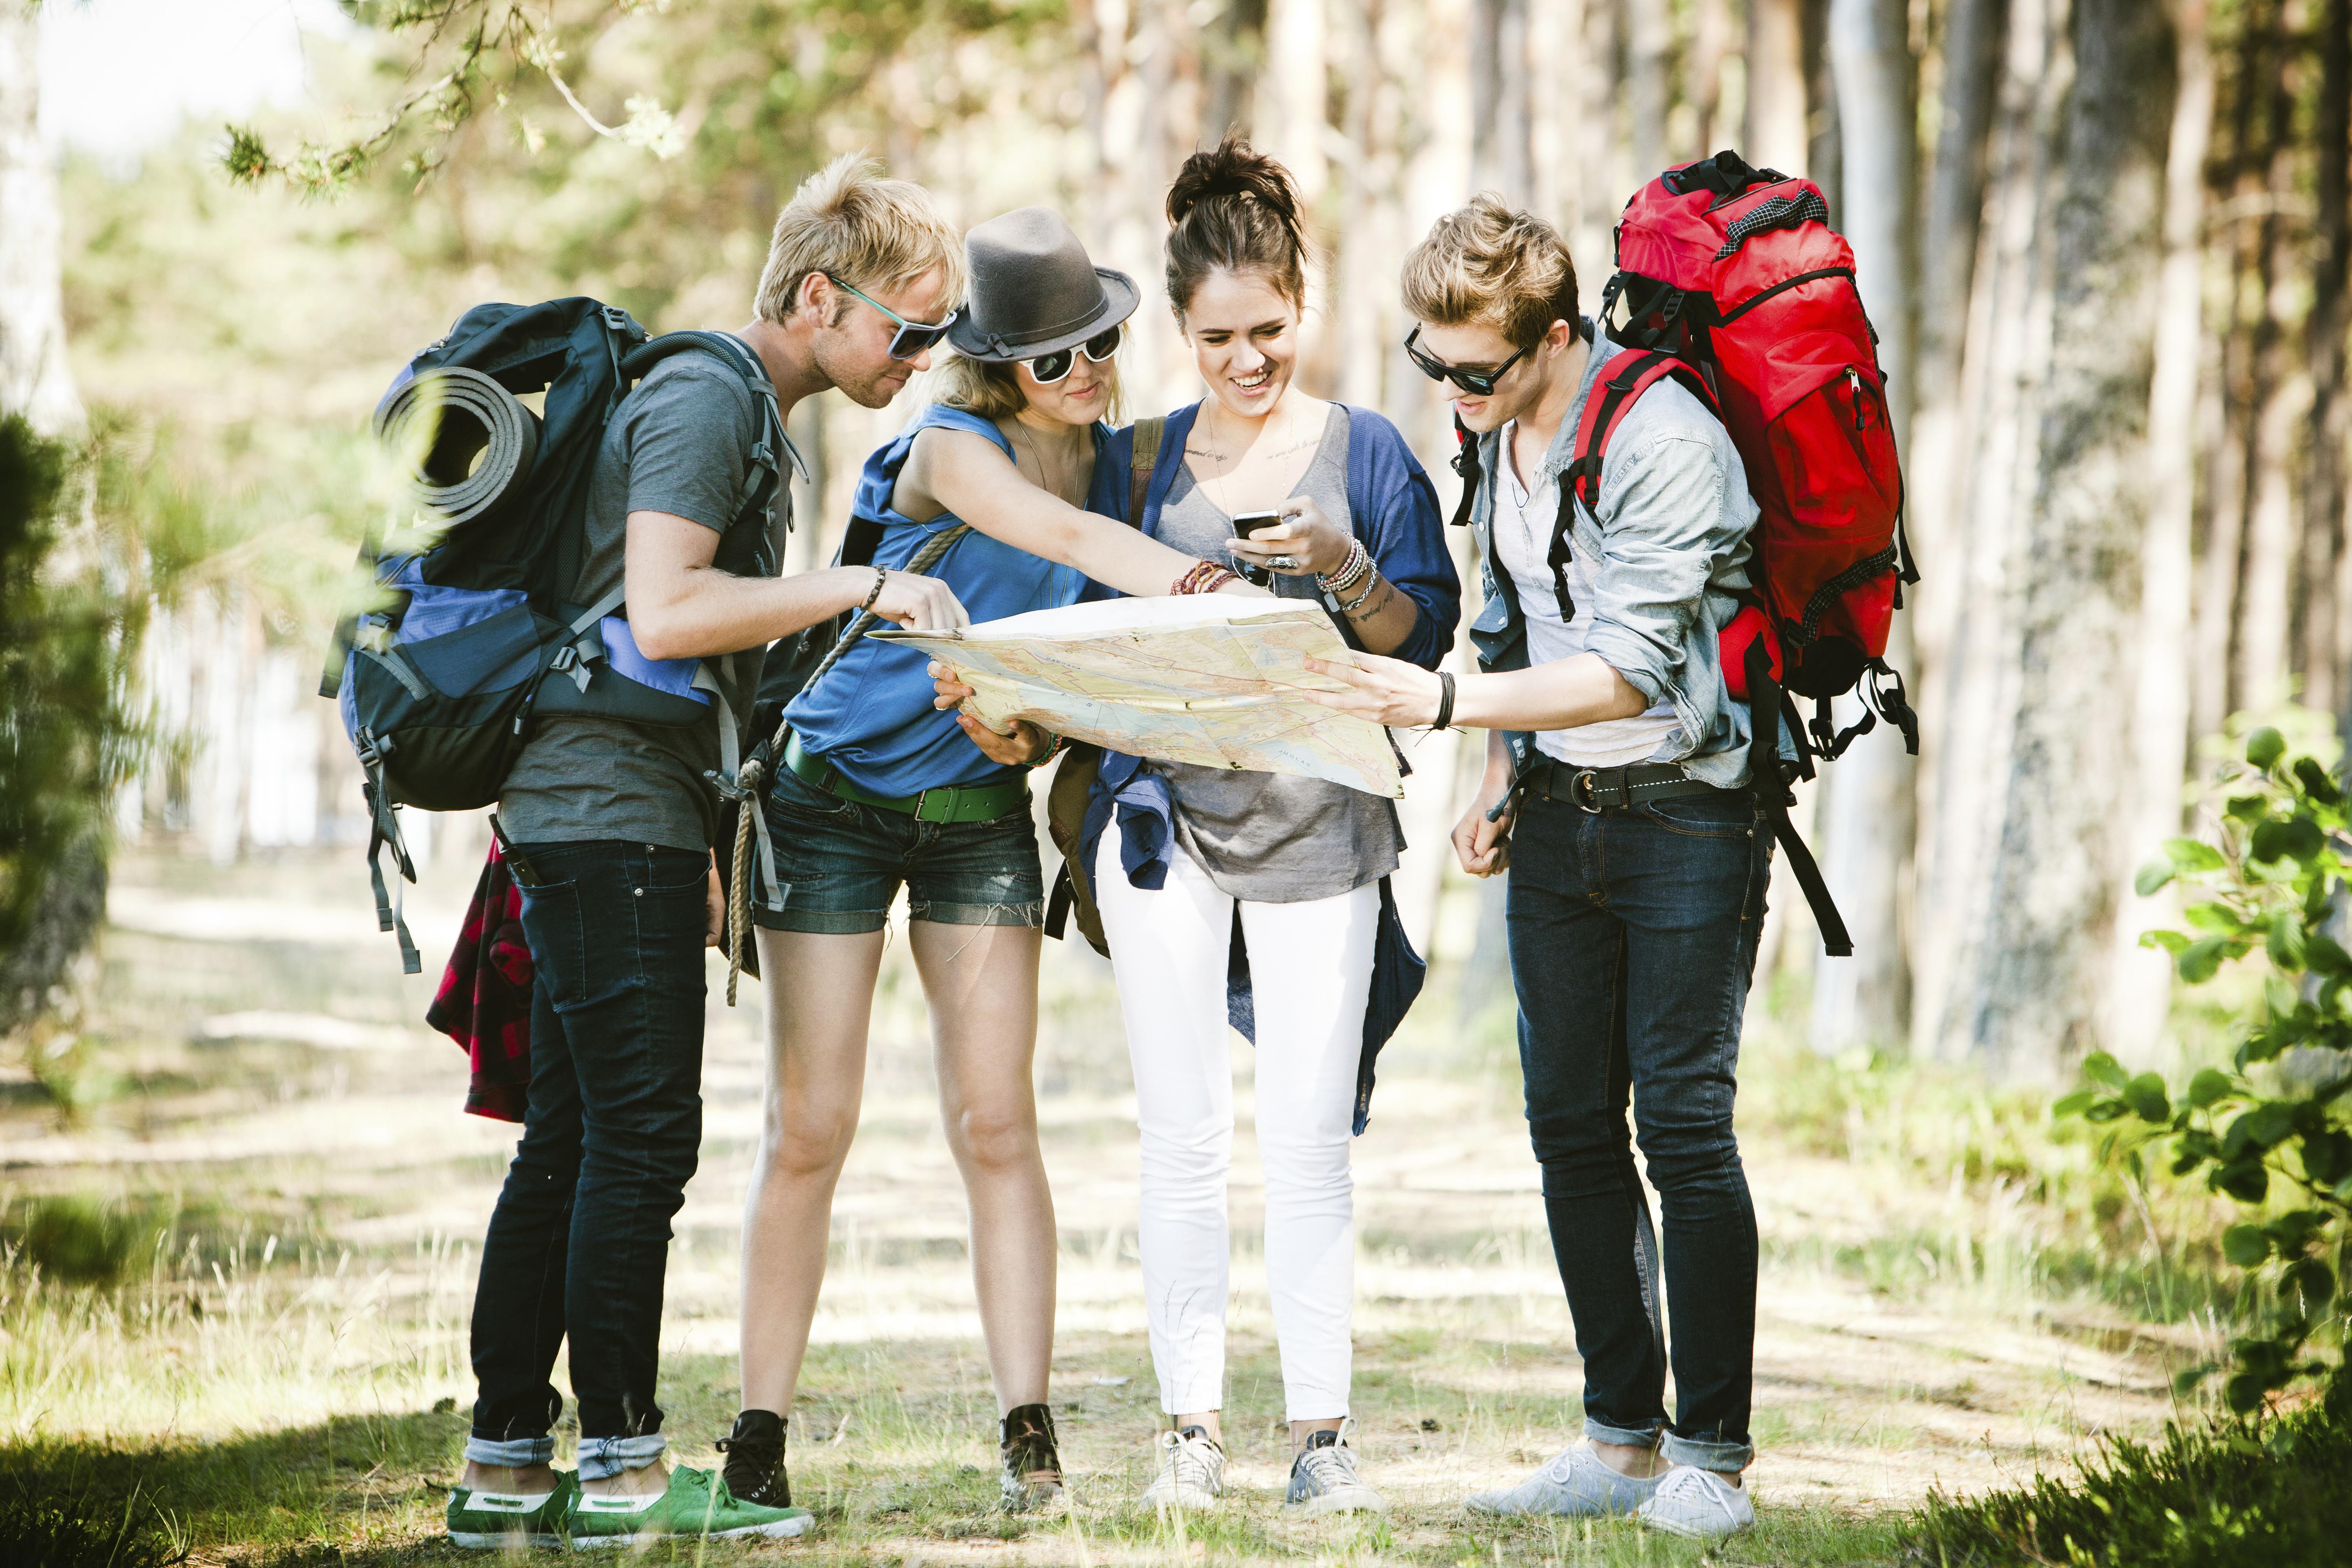 When we go camping. Студенты туристы. Туризм. Молодежь в походе. Подростки путешествия.